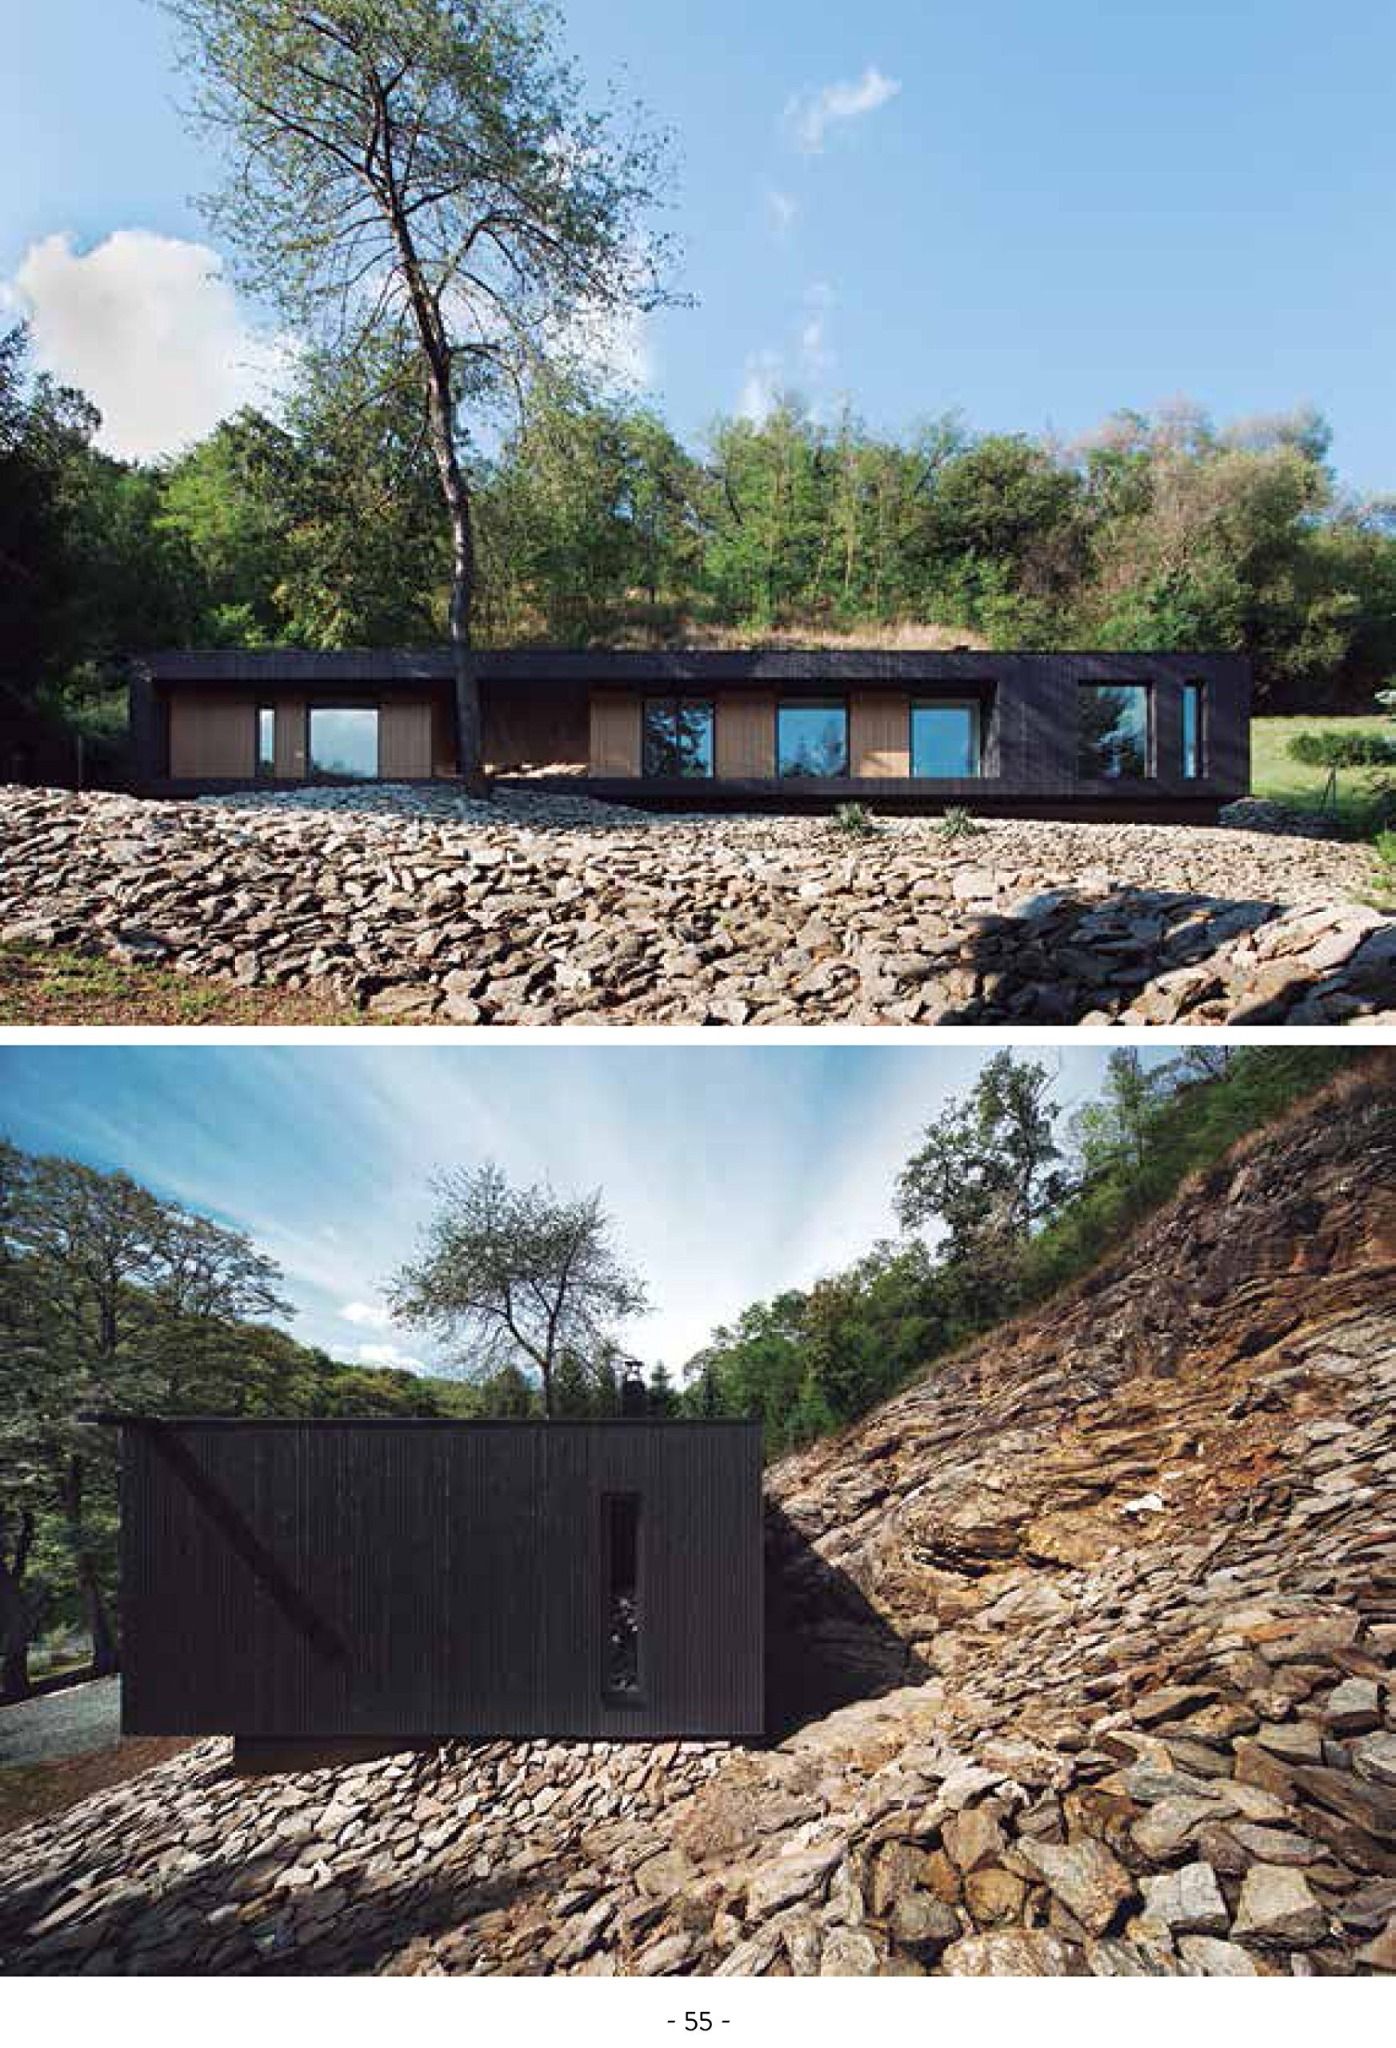  New Cabin Homes_Patricia Martinez_9788416500741_Instituto Monsa de Ediciones 